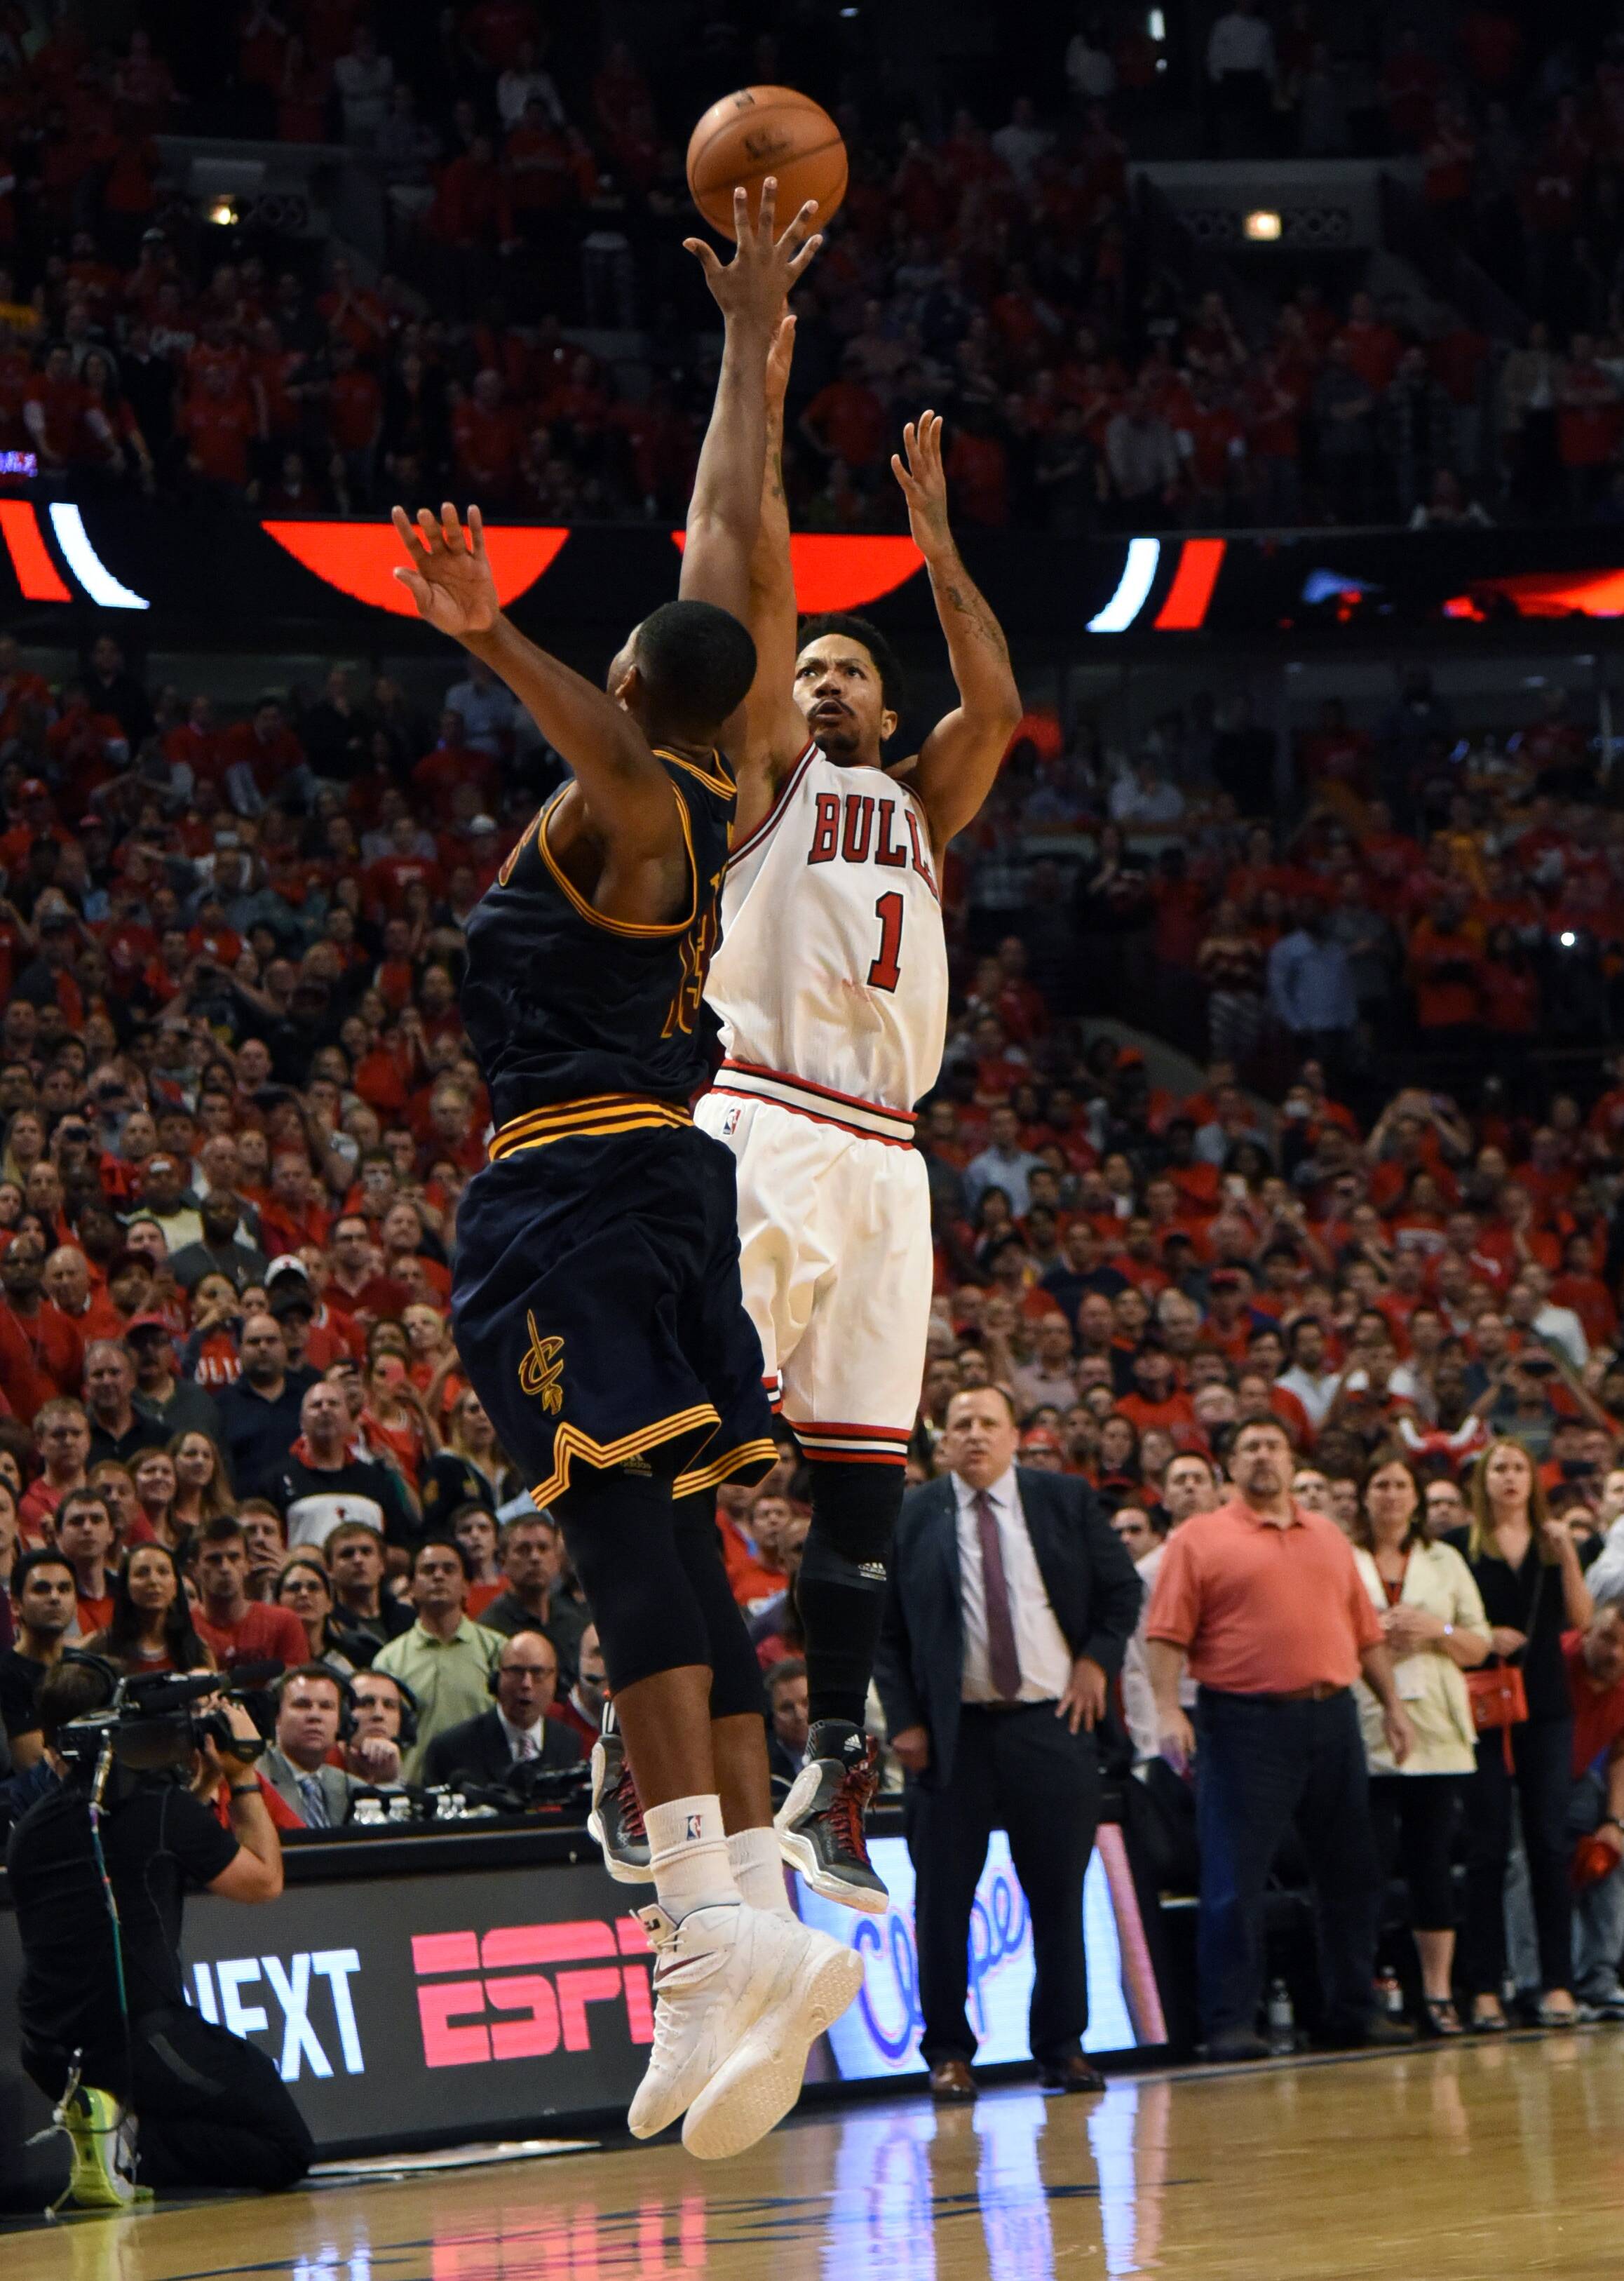 NBA: Derrick Rose blooms for Chicago Bulls to derail Golden State Warriors, Basketball News